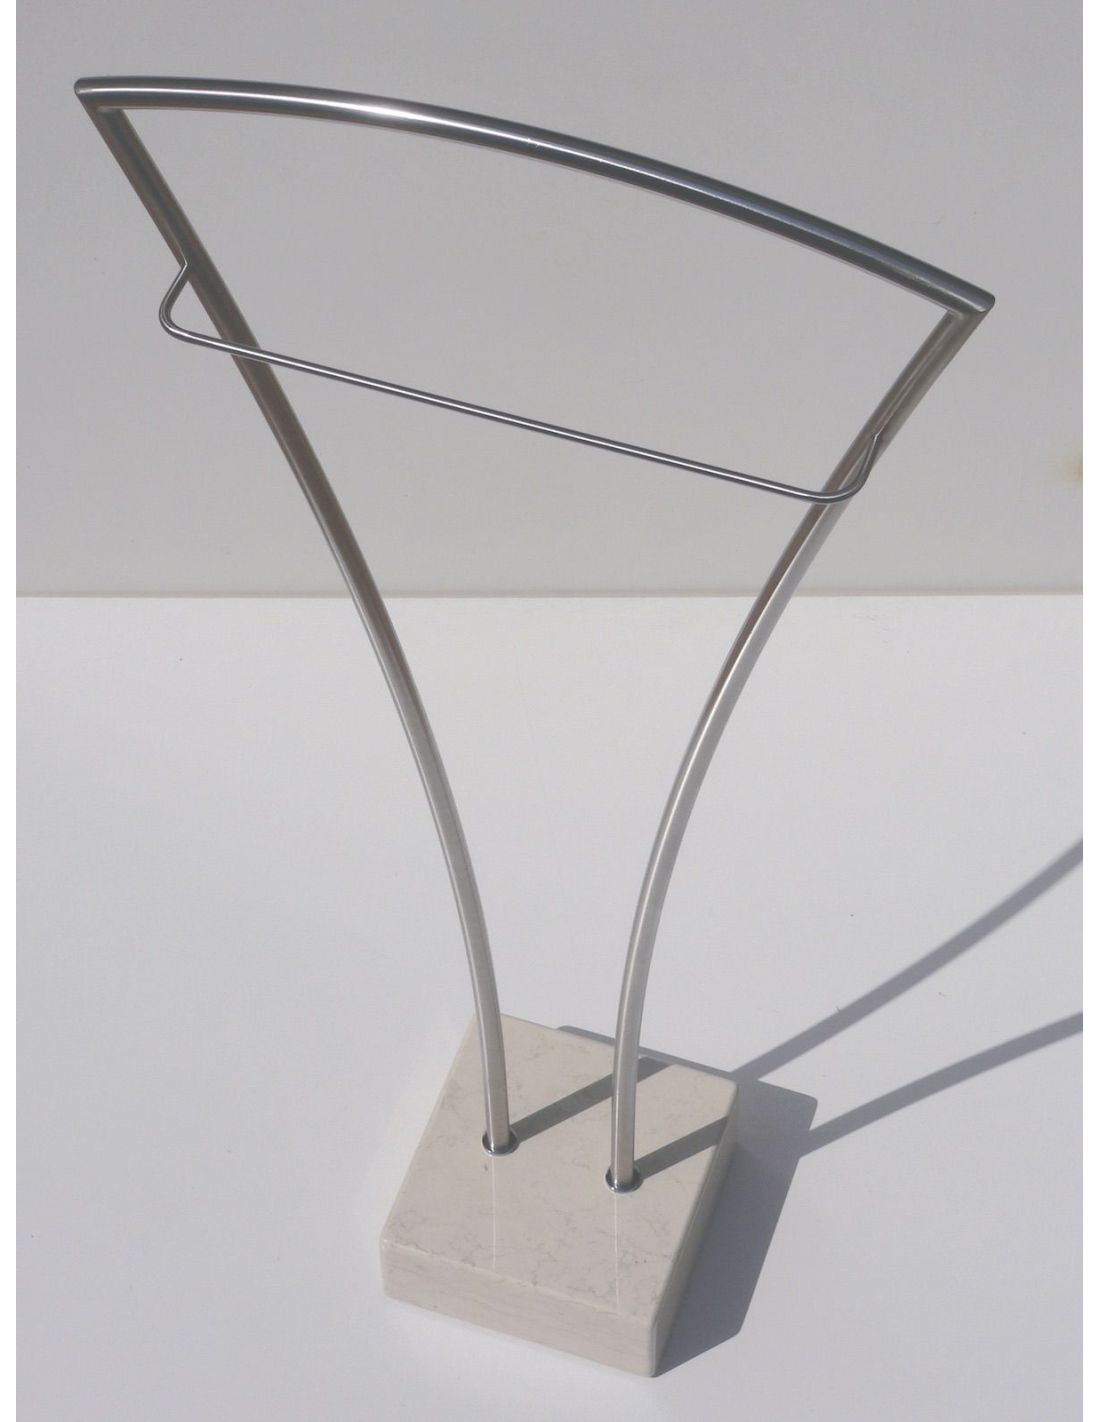 Servomuto design moderno in acciaio inox Vilmos